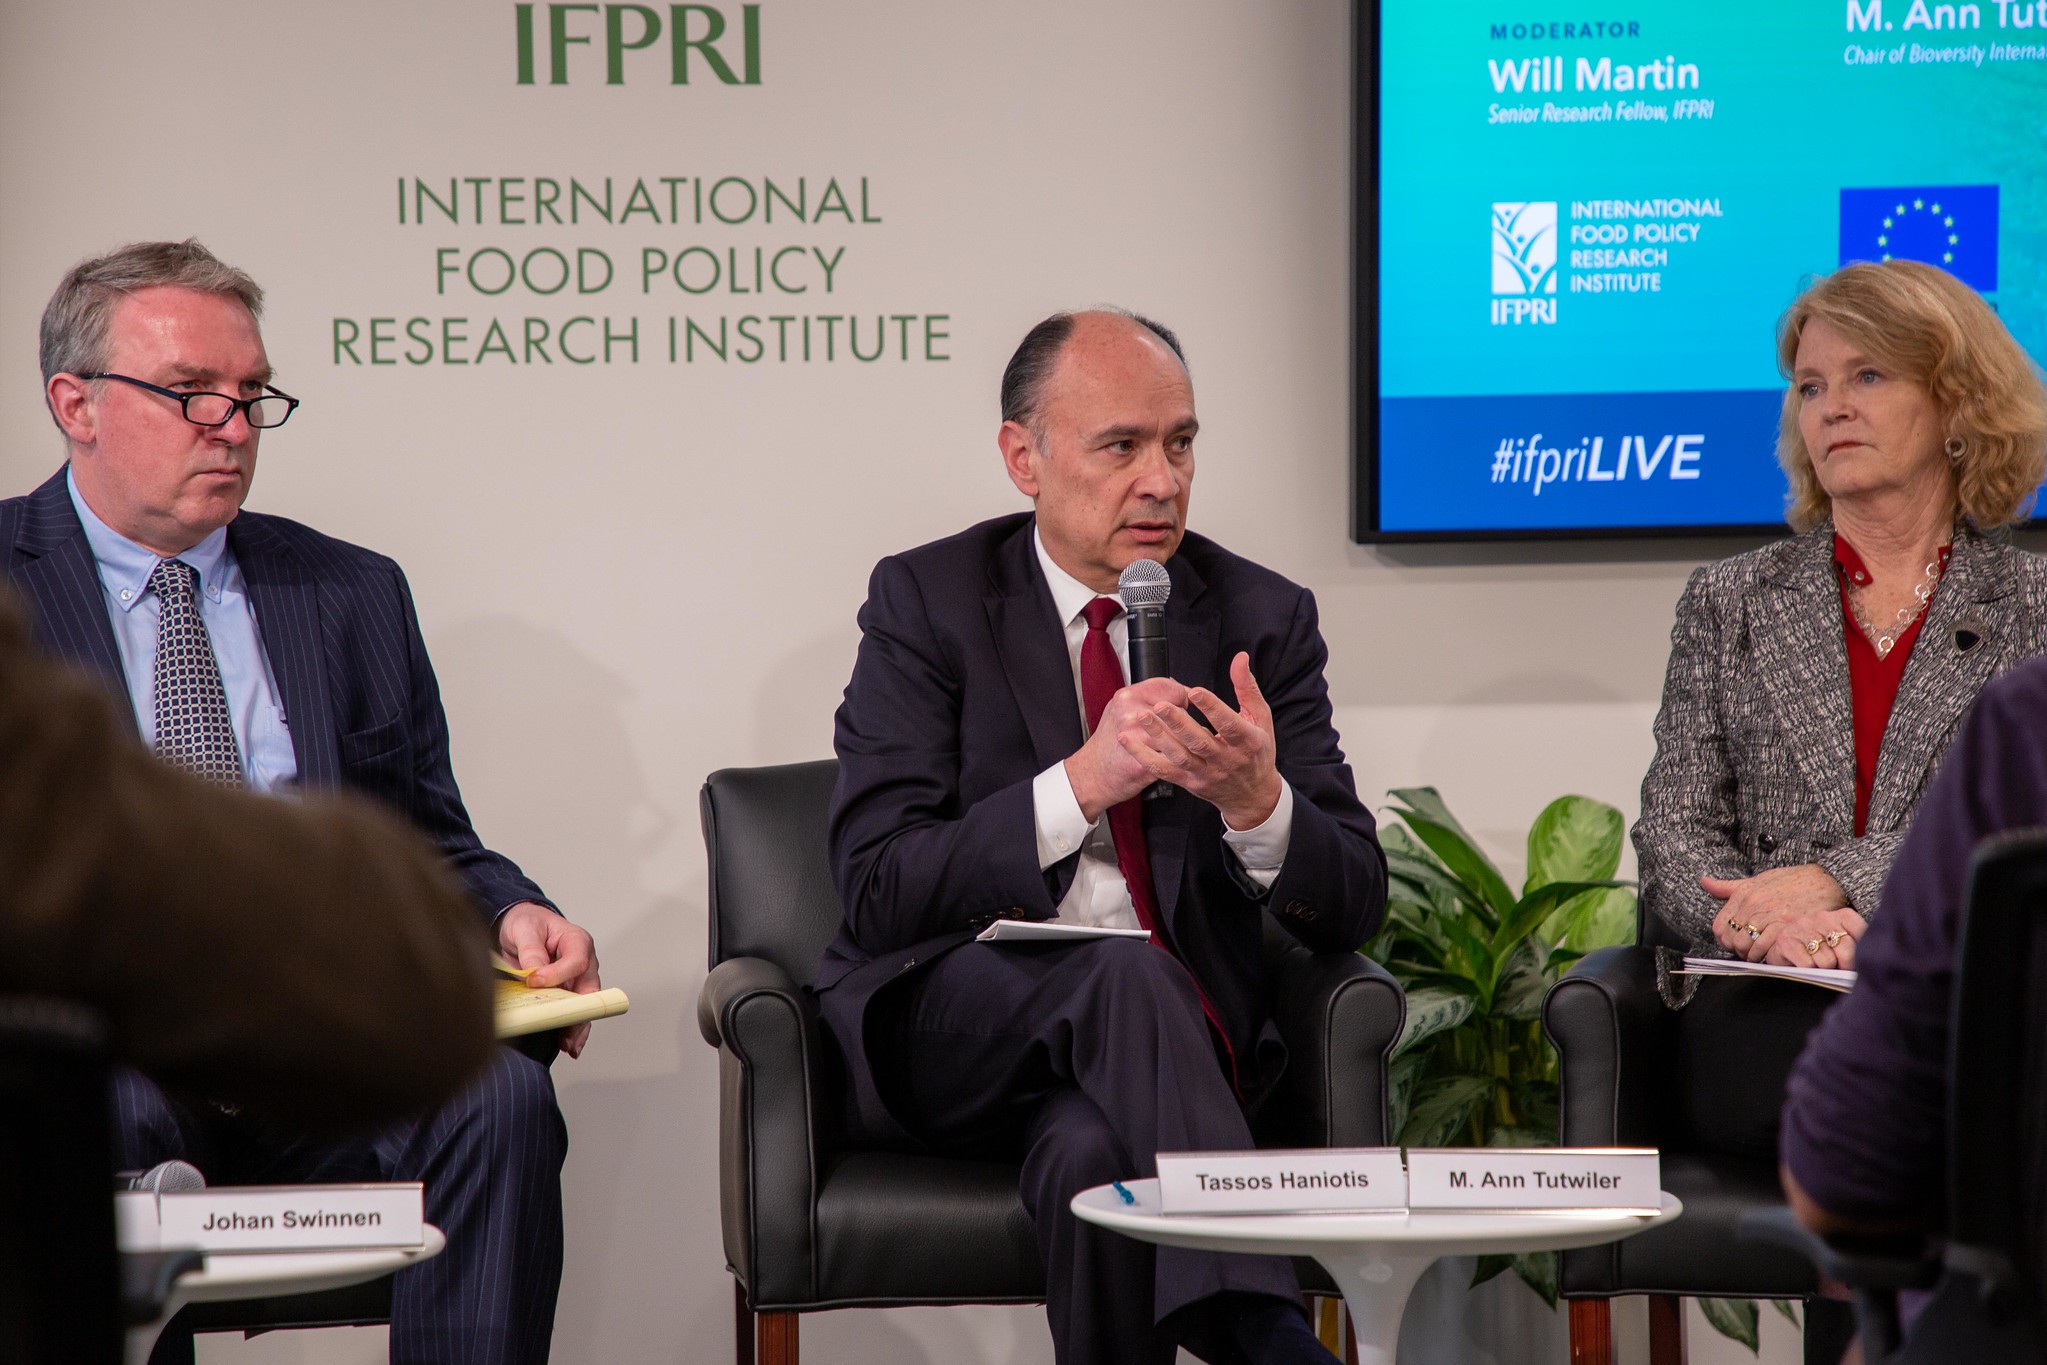 Leden van de Europese Commissie en het International Food Policy Research Institute discussiëren over de ‘Farm to Fork’-strategie van de Commissie, onderdeel van de Green Deal. © Jamed/Falik/IFPRI via Flickr.